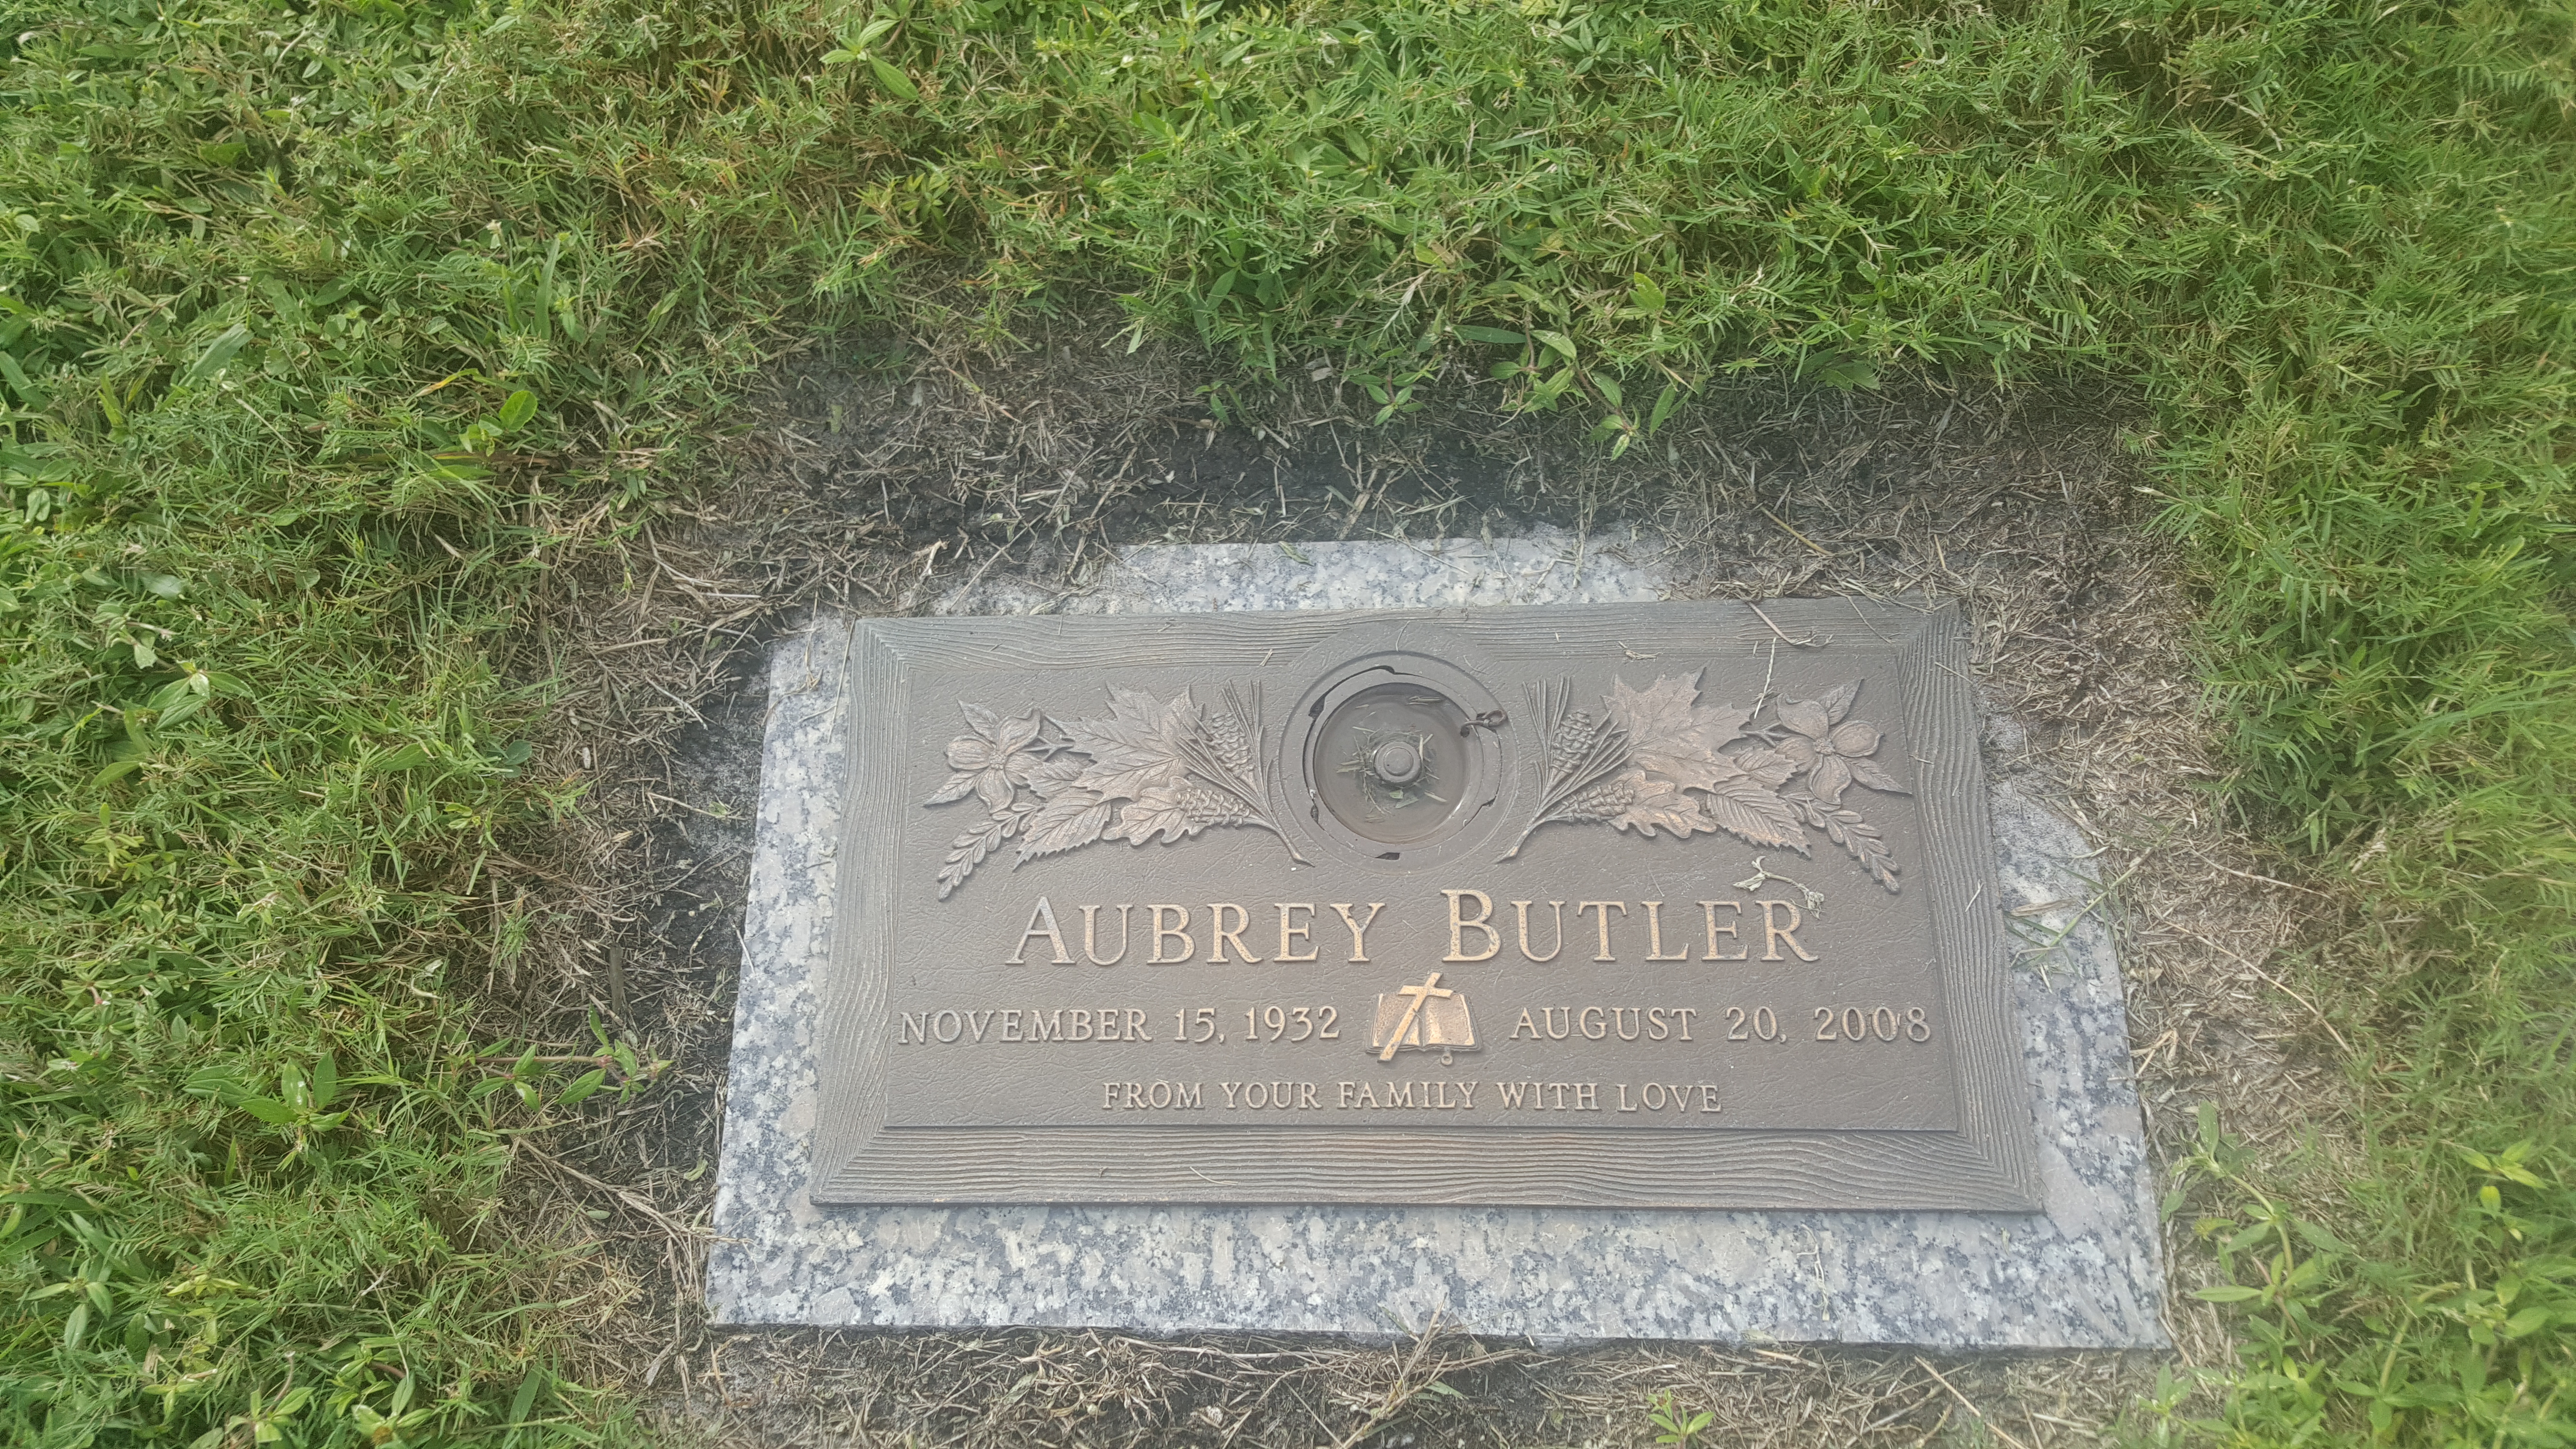 Aubrey Butler